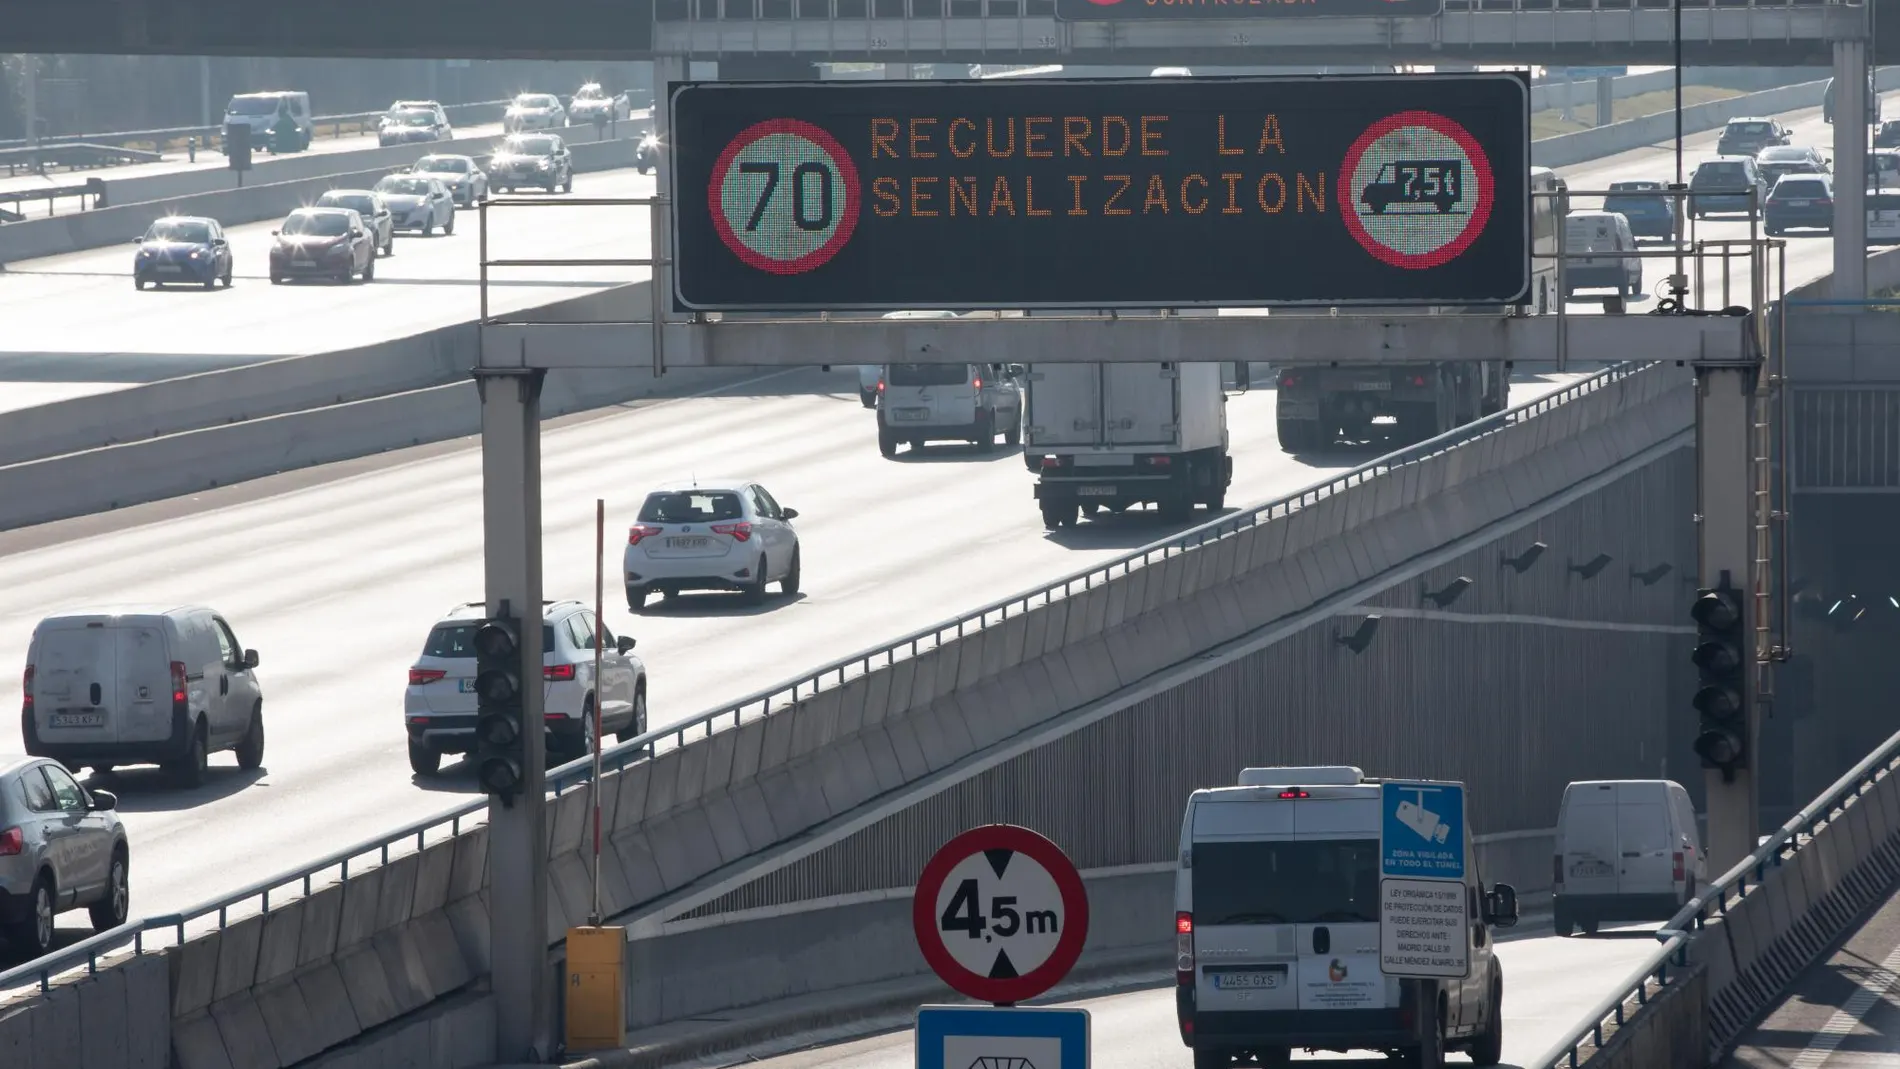 La semana pasada, la velocidad se Madrid se limitó por contaminación